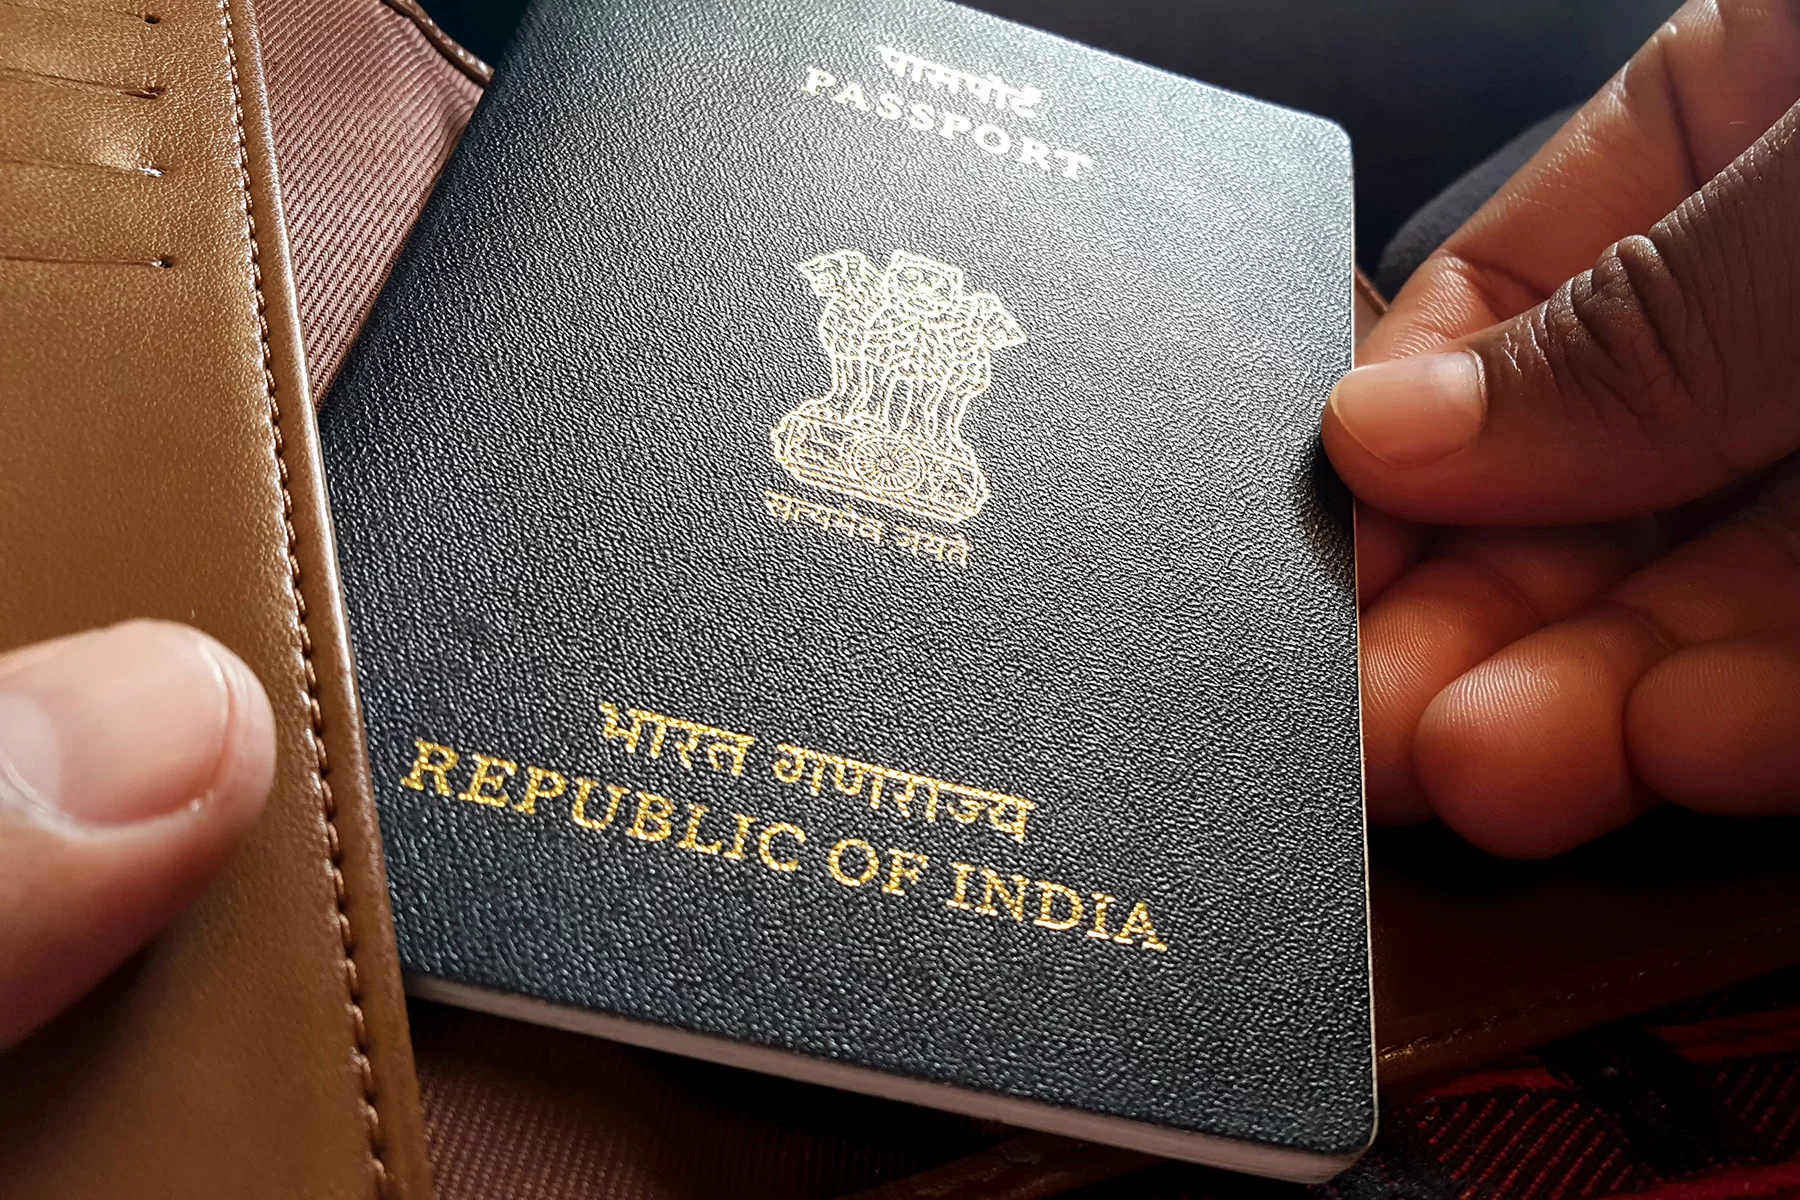 Traveler holding an Indian passport